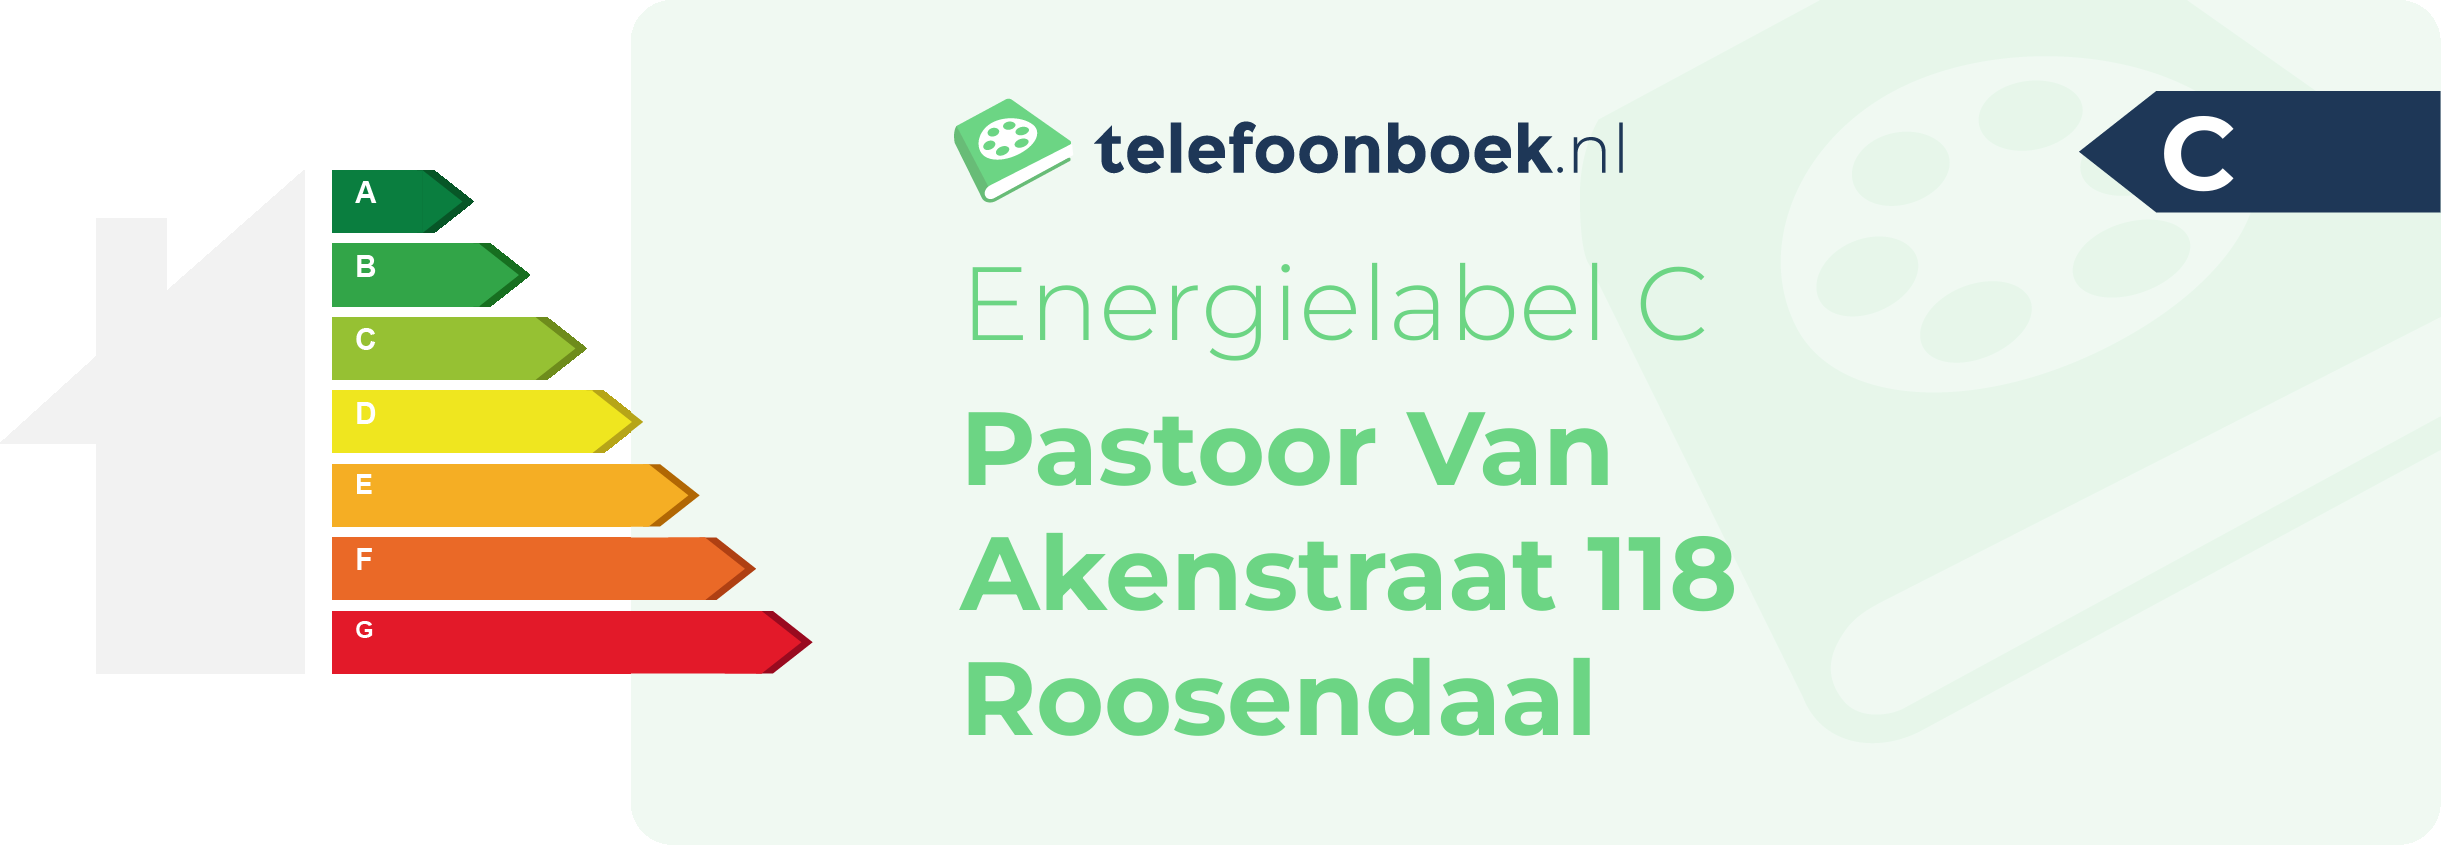 Energielabel Pastoor Van Akenstraat 118 Roosendaal